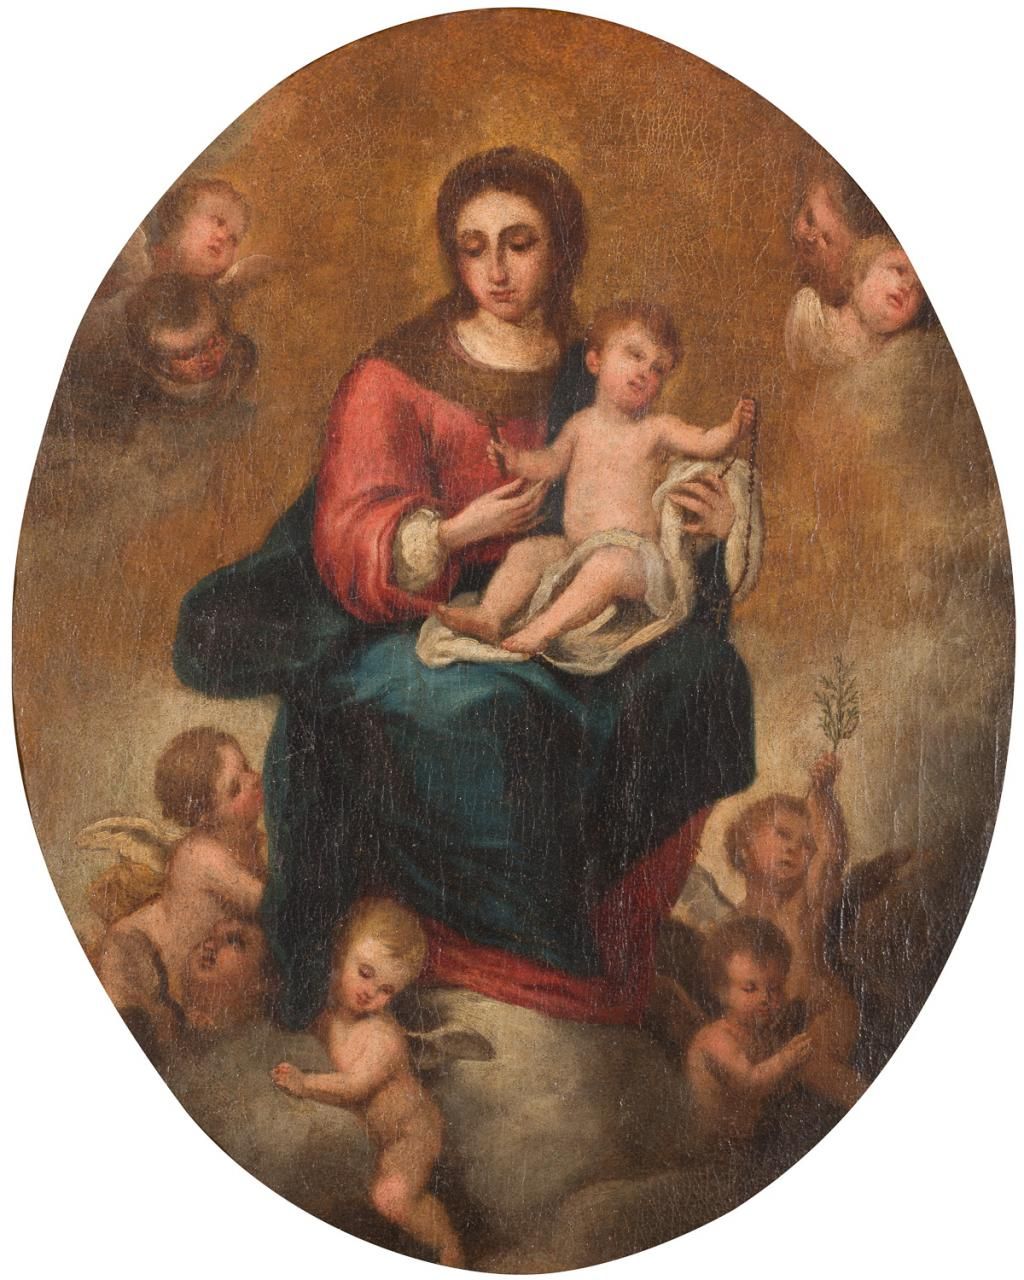 ESCUELA ESPAÑOLA S. XVIII Our Lady of the Rosary 
Oil on canvas
50,5 x 41 cm